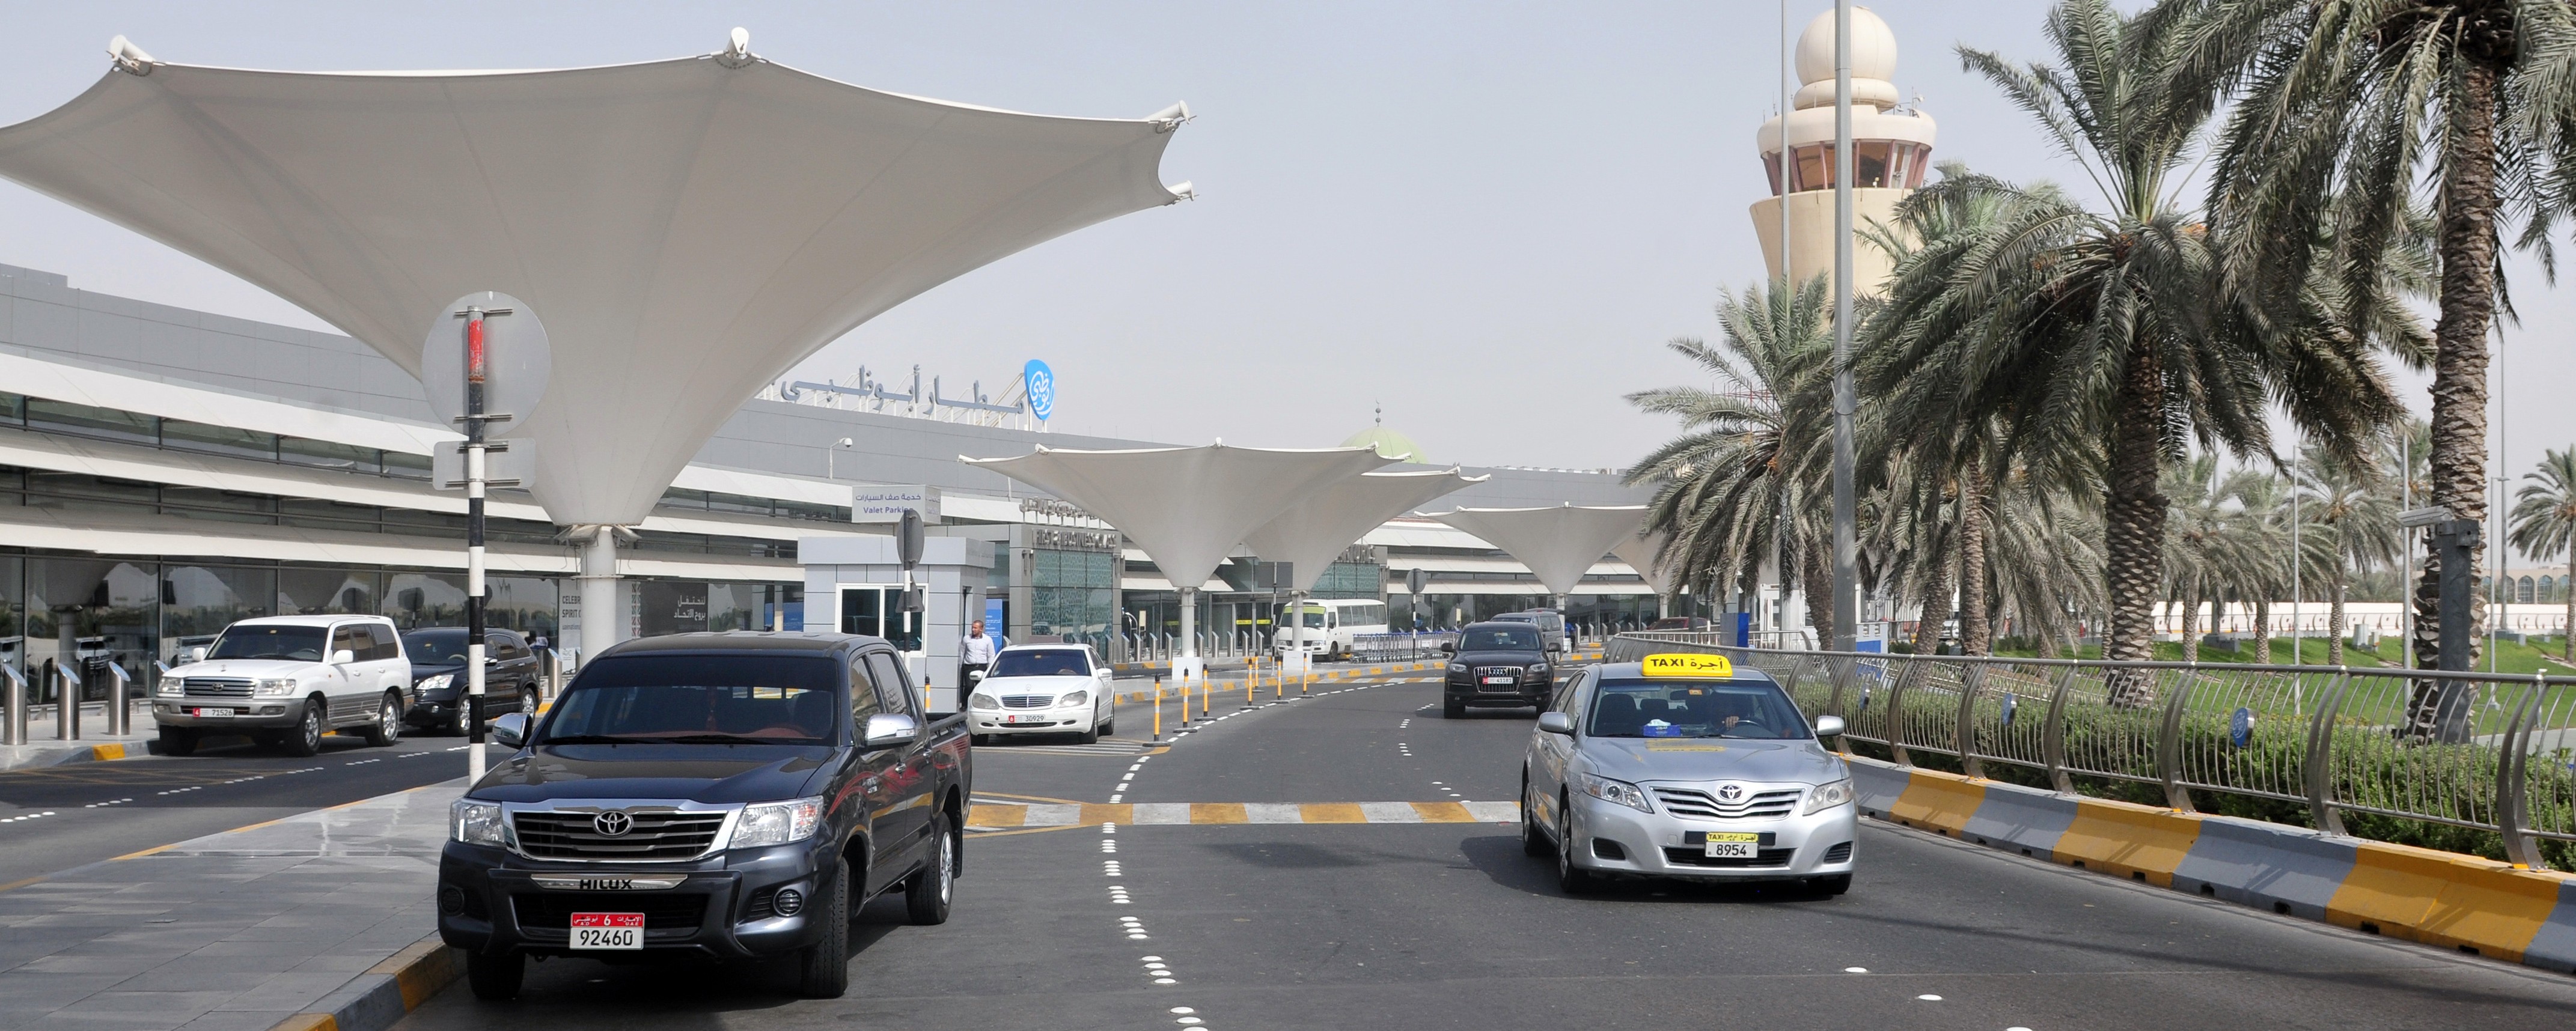 Abu-Dhabi-airportthatha